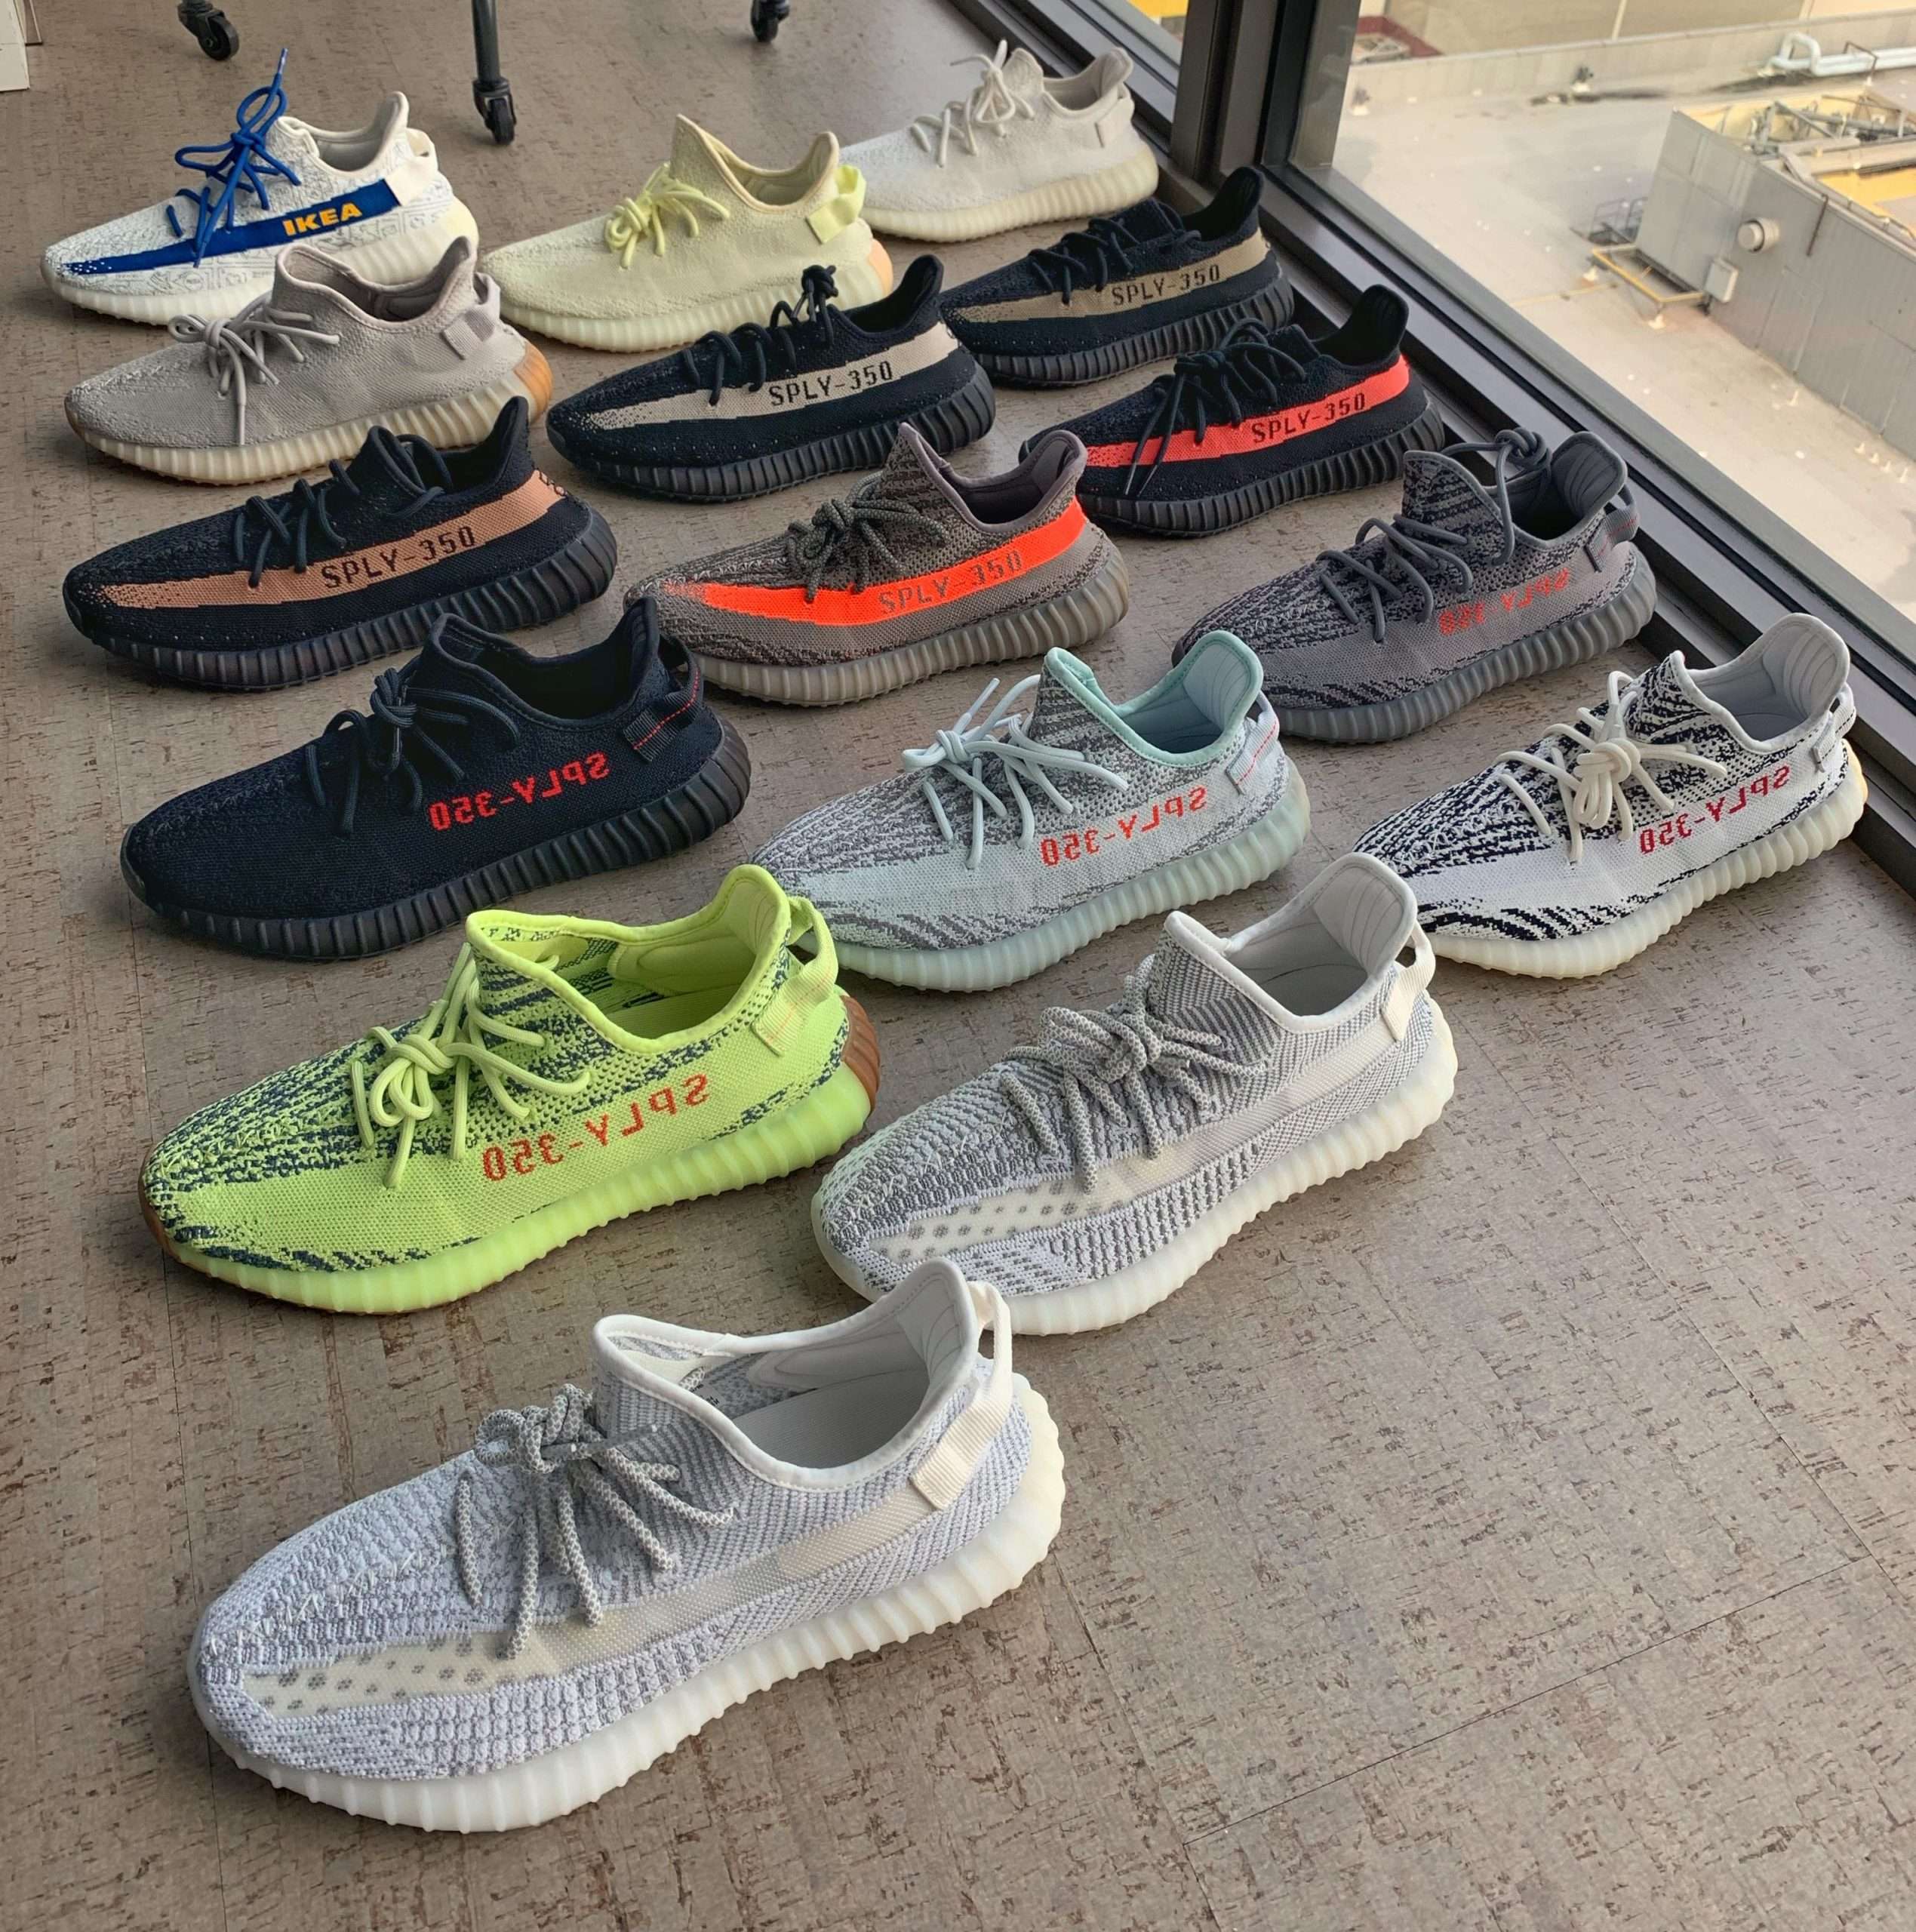 Kanye West Sneakers : Sneakers